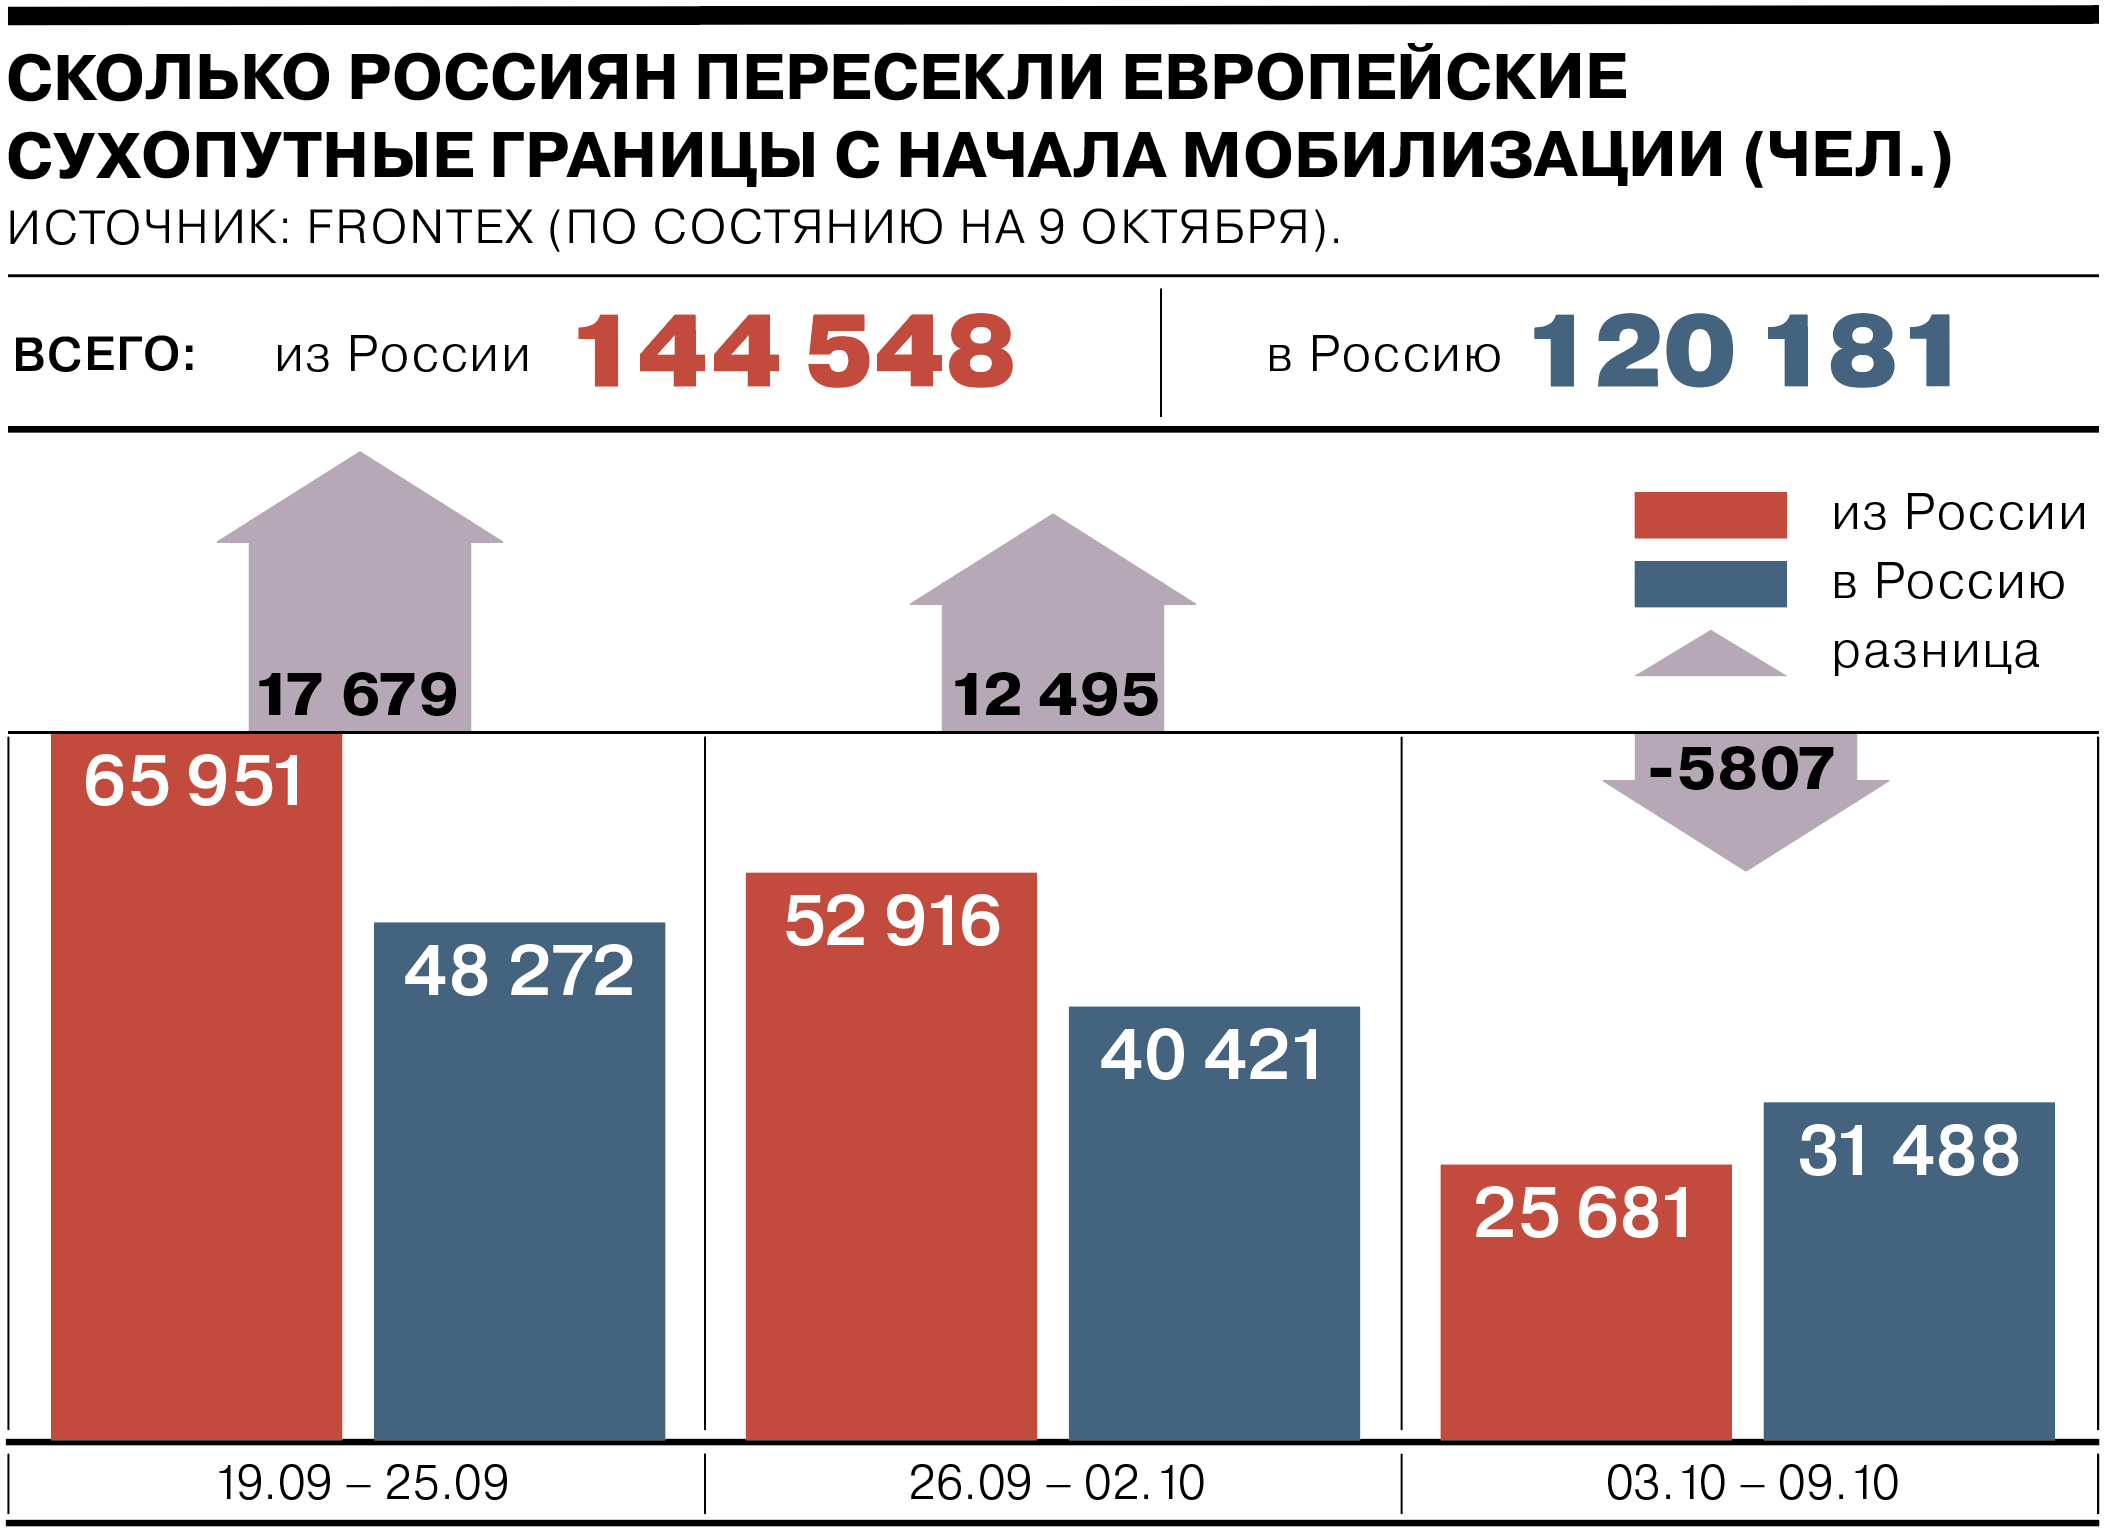 Скольких мобилизируют. Статистика мобилизации. Количество мобилизированных в России. Число мобилизованных по регионам. Количество мобилизованных по регионам.